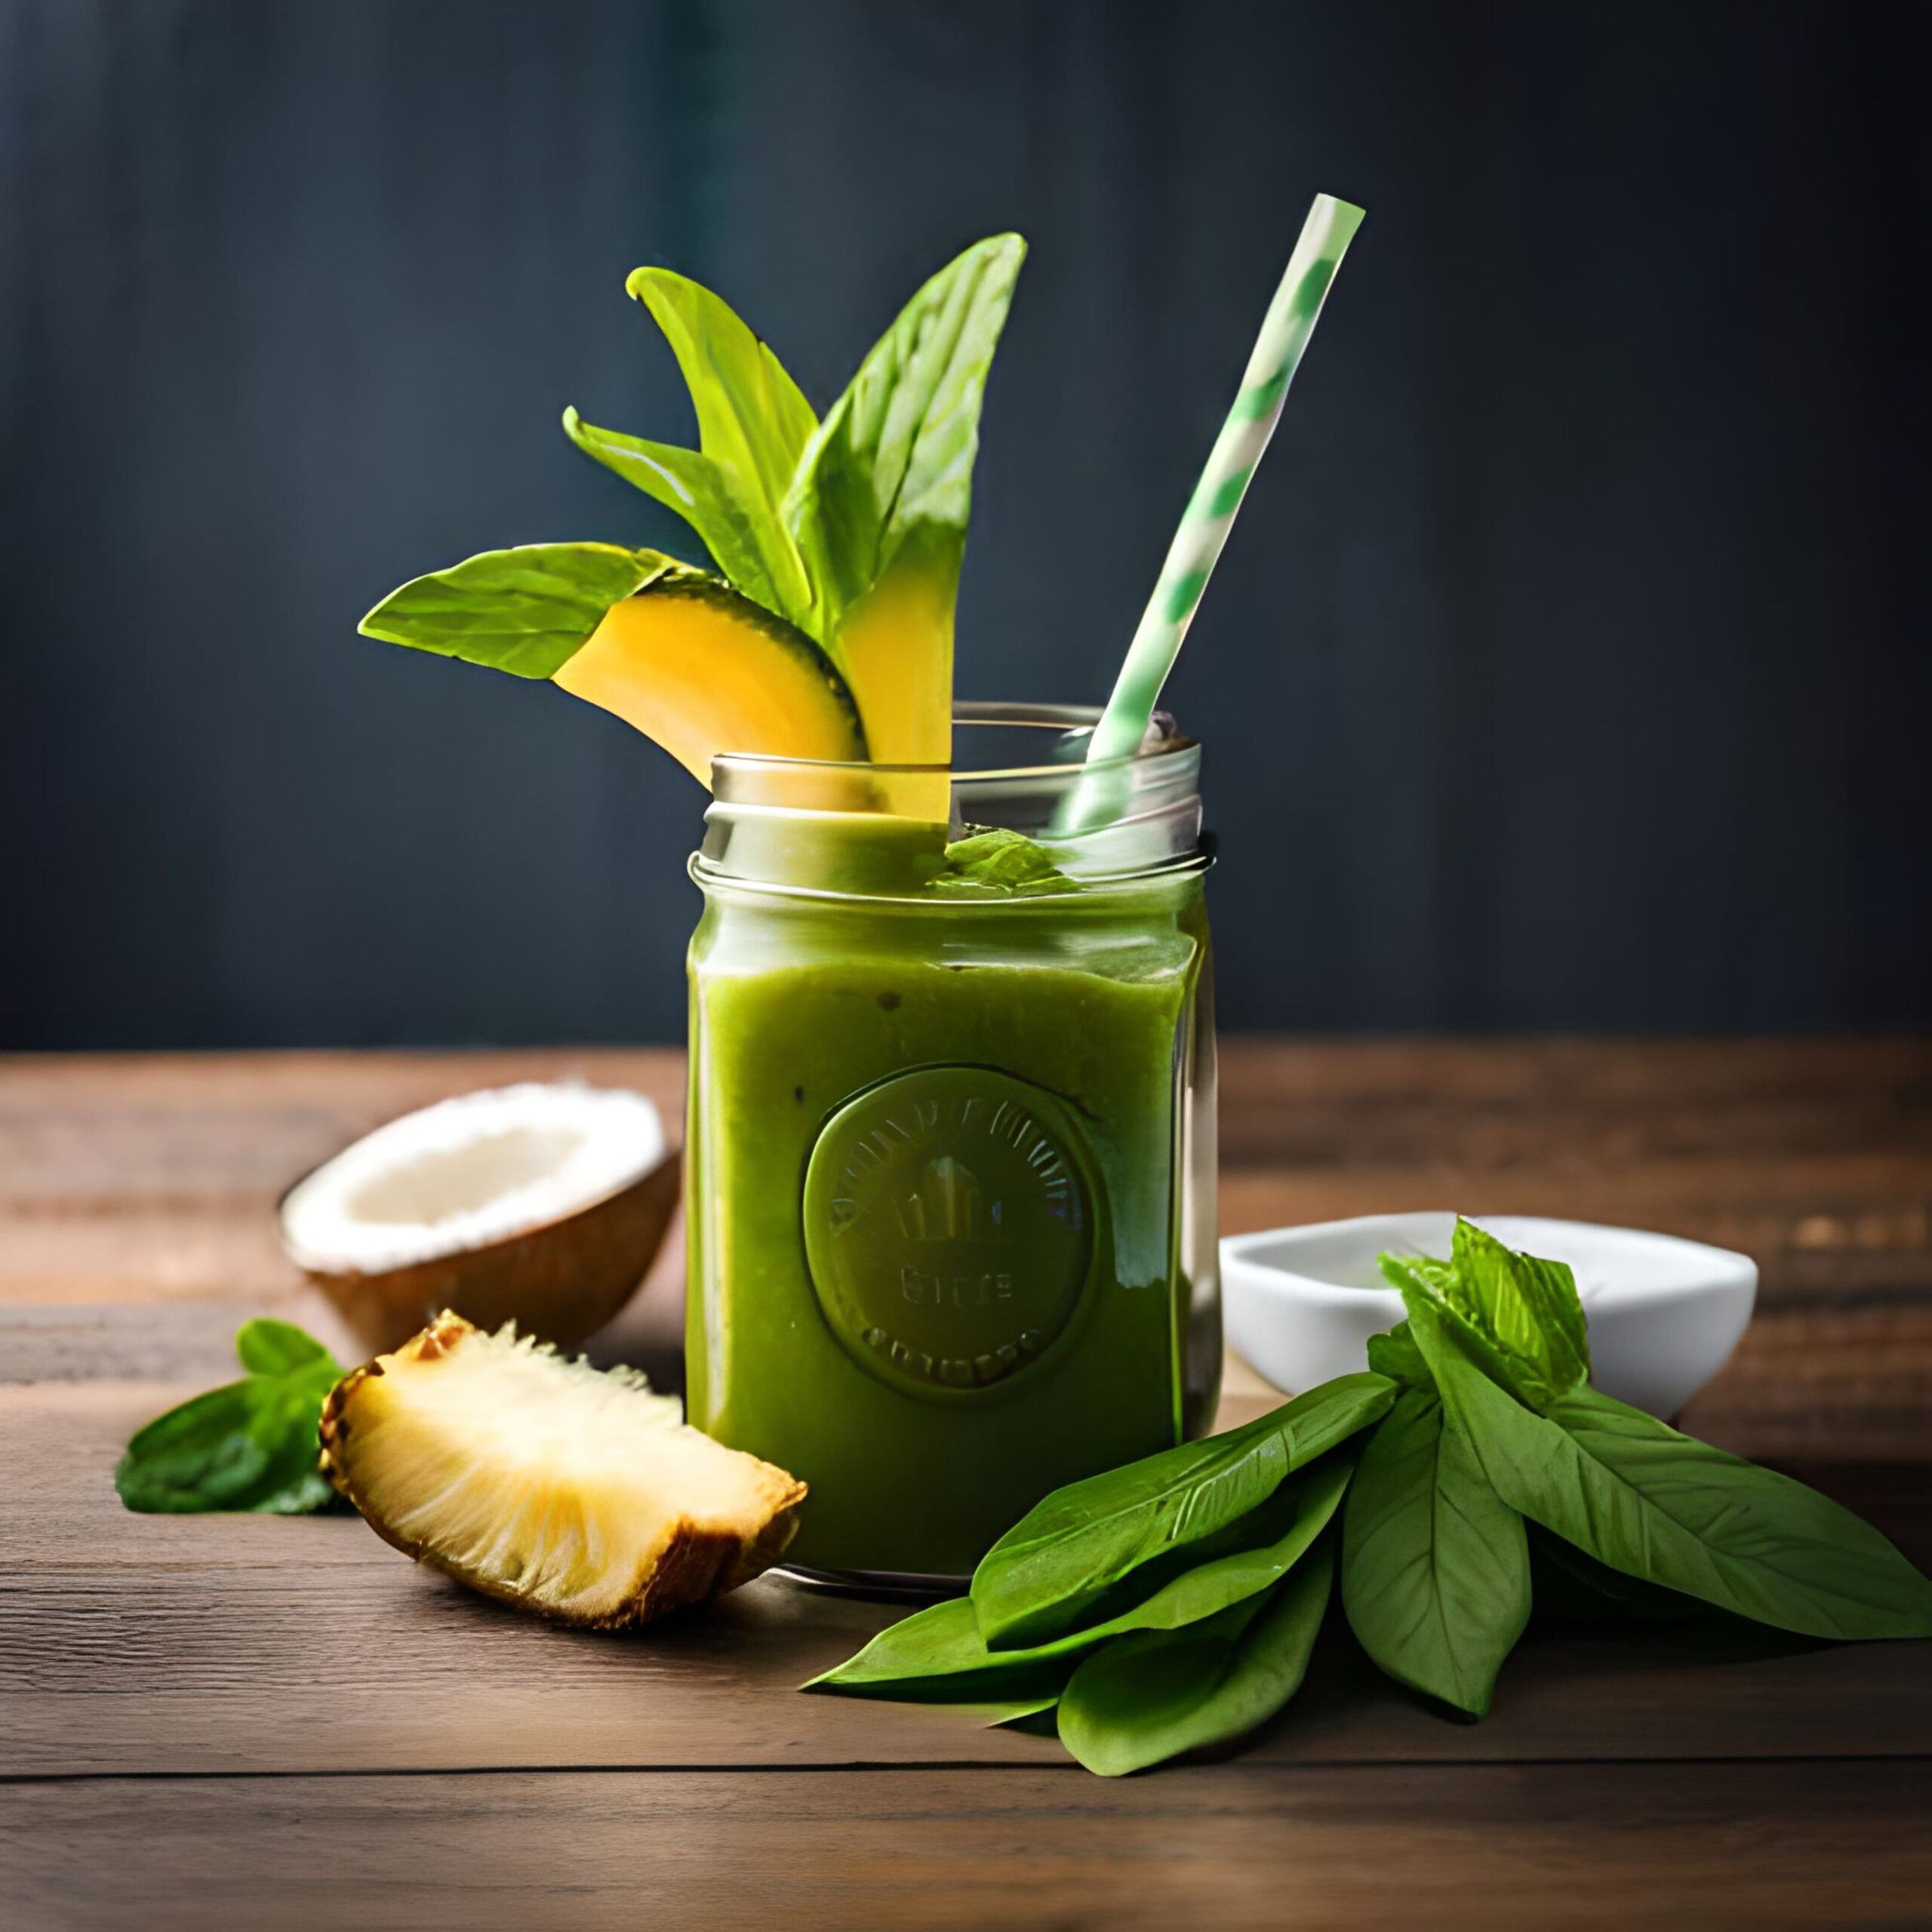 Le smoothie vert : L'alliance parfaite entre santé et perte de poids